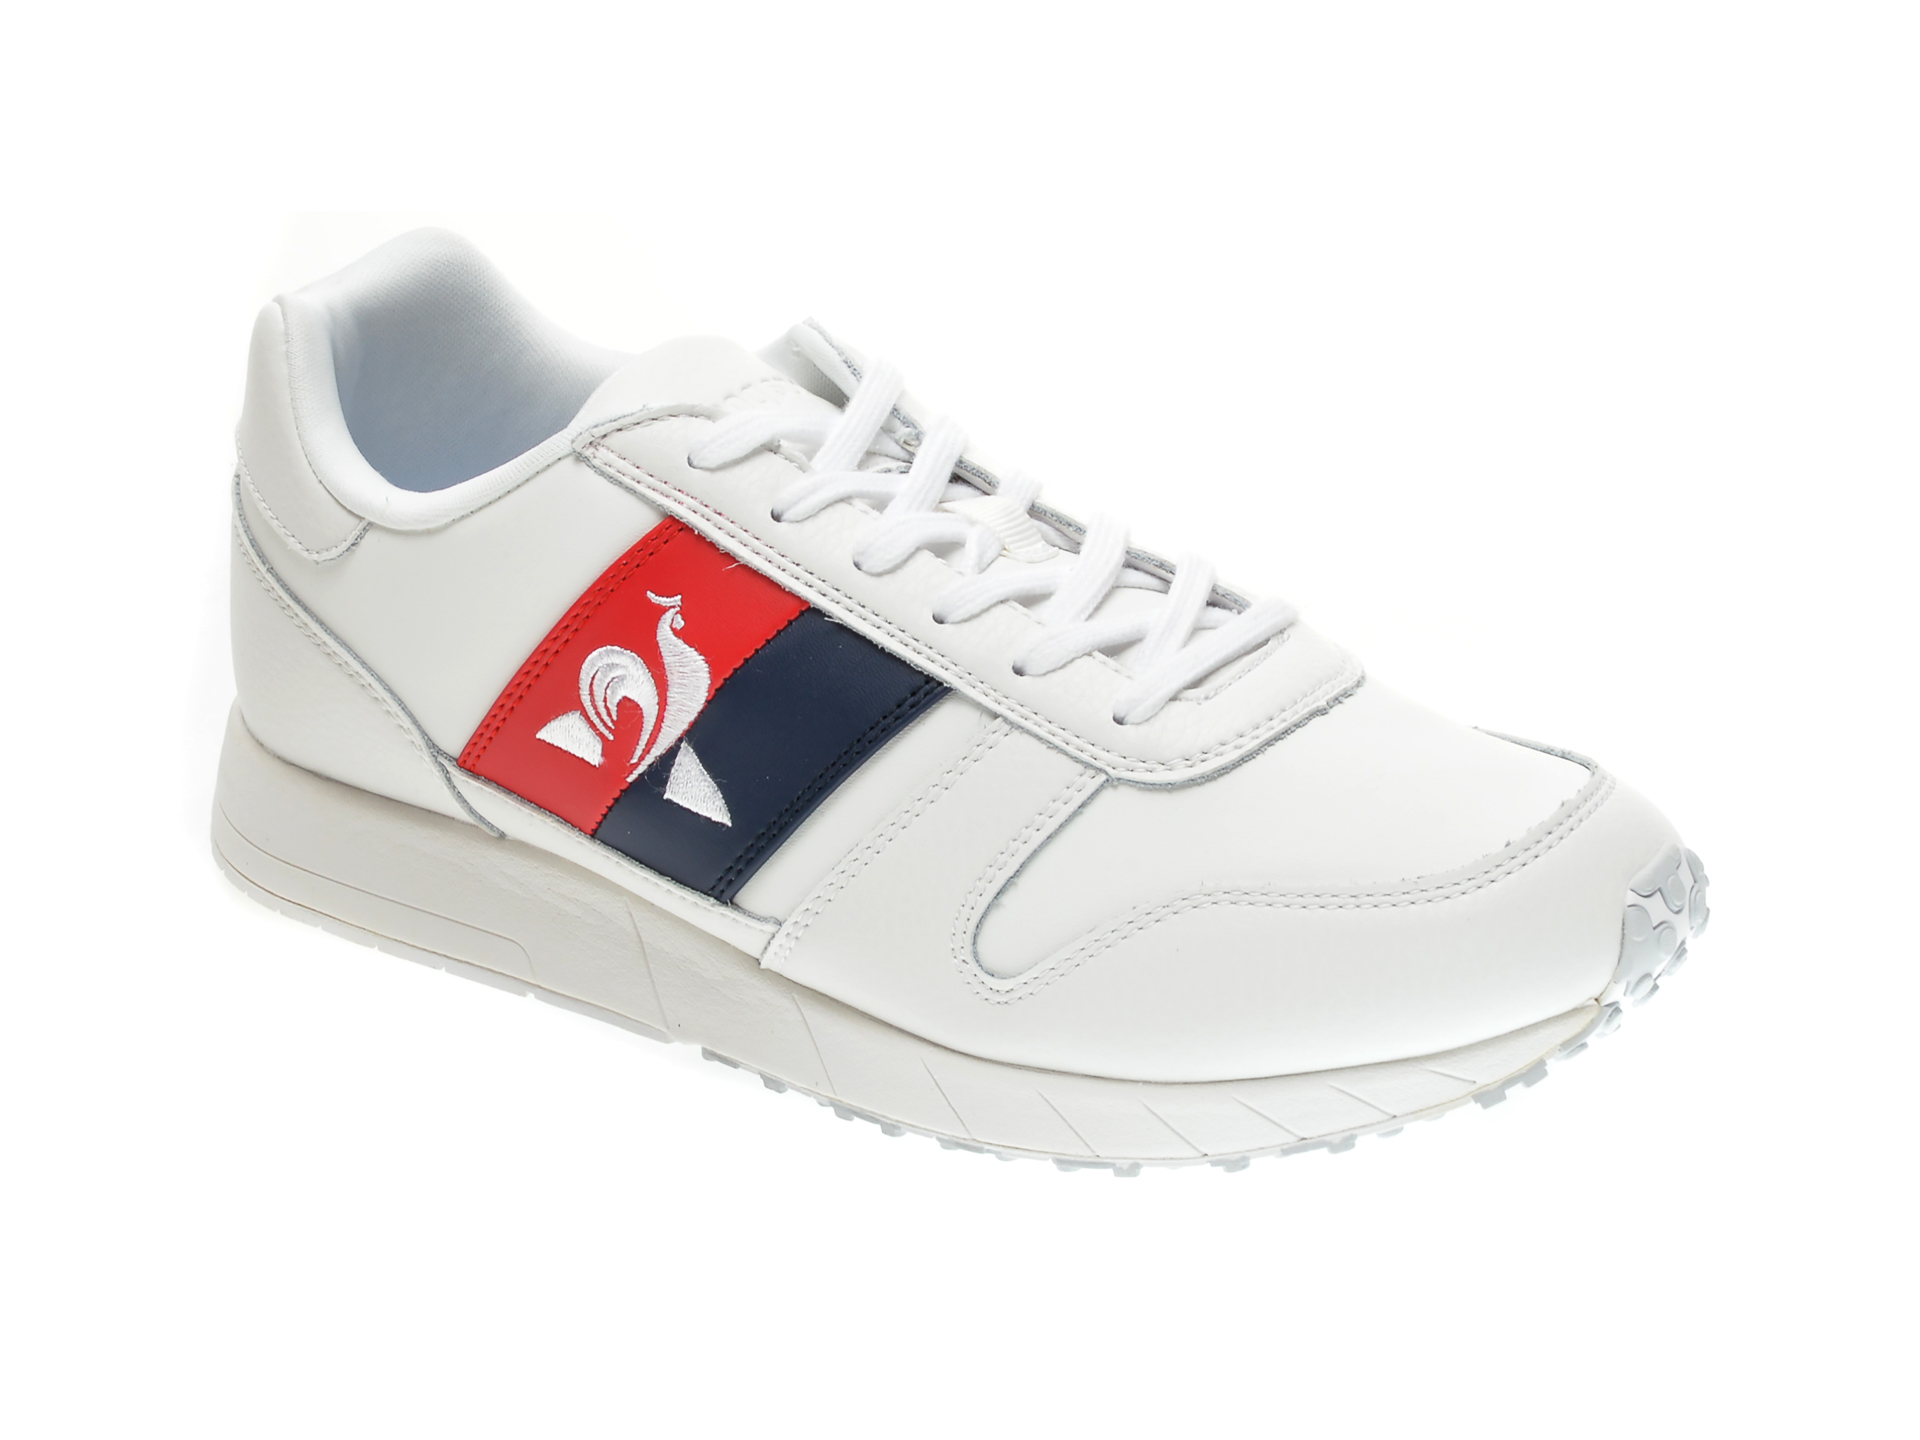 Pantofi sport LE COQ SPORTIF albi, 2020175, din piele naturala New